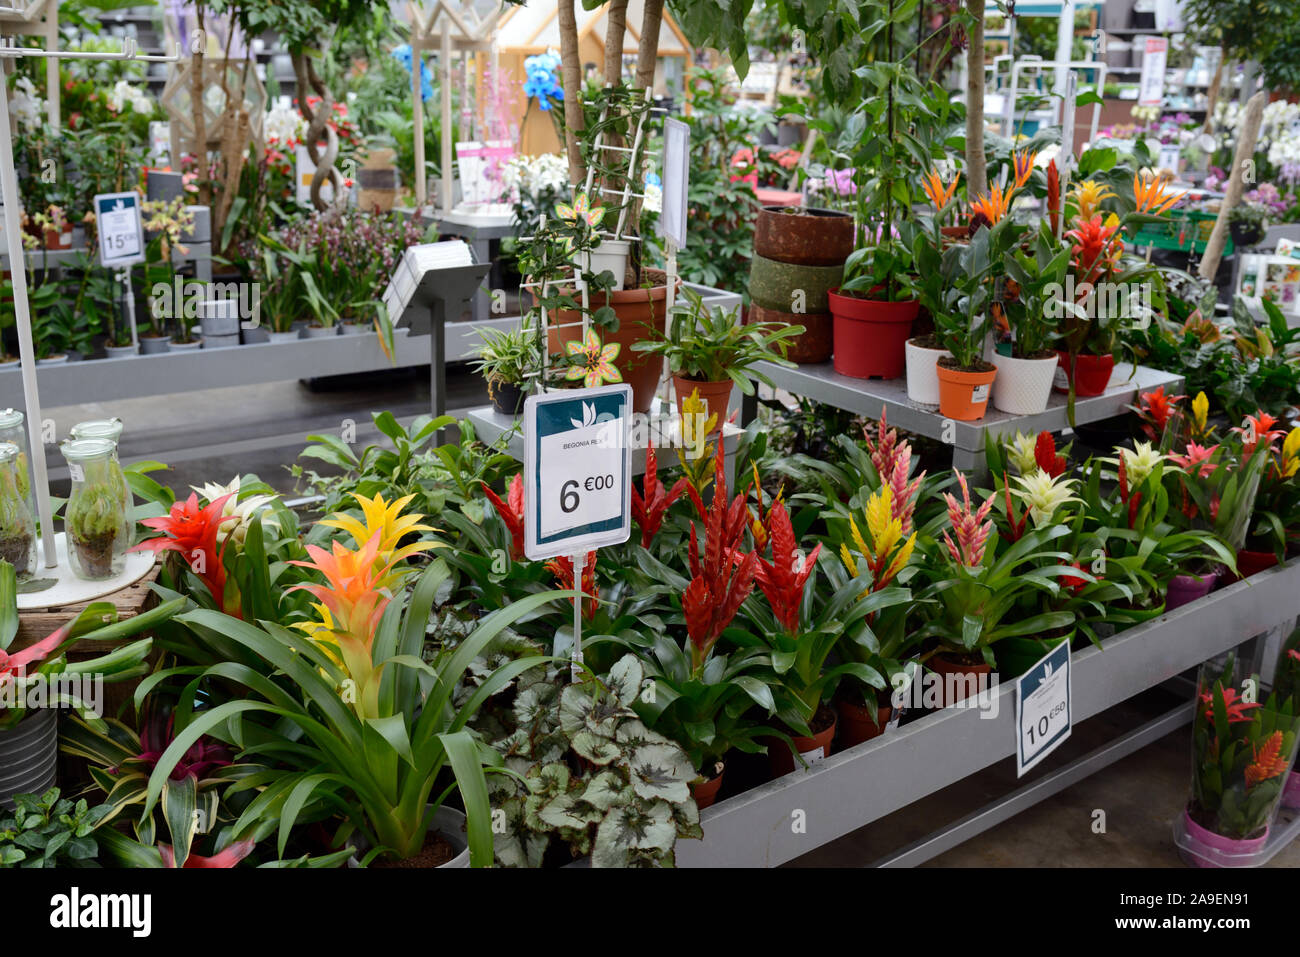 Impianto di visualizzazione o di raccolta di Bromelia ibridi per la vendita nel Centro giardino o Fioraio Foto Stock